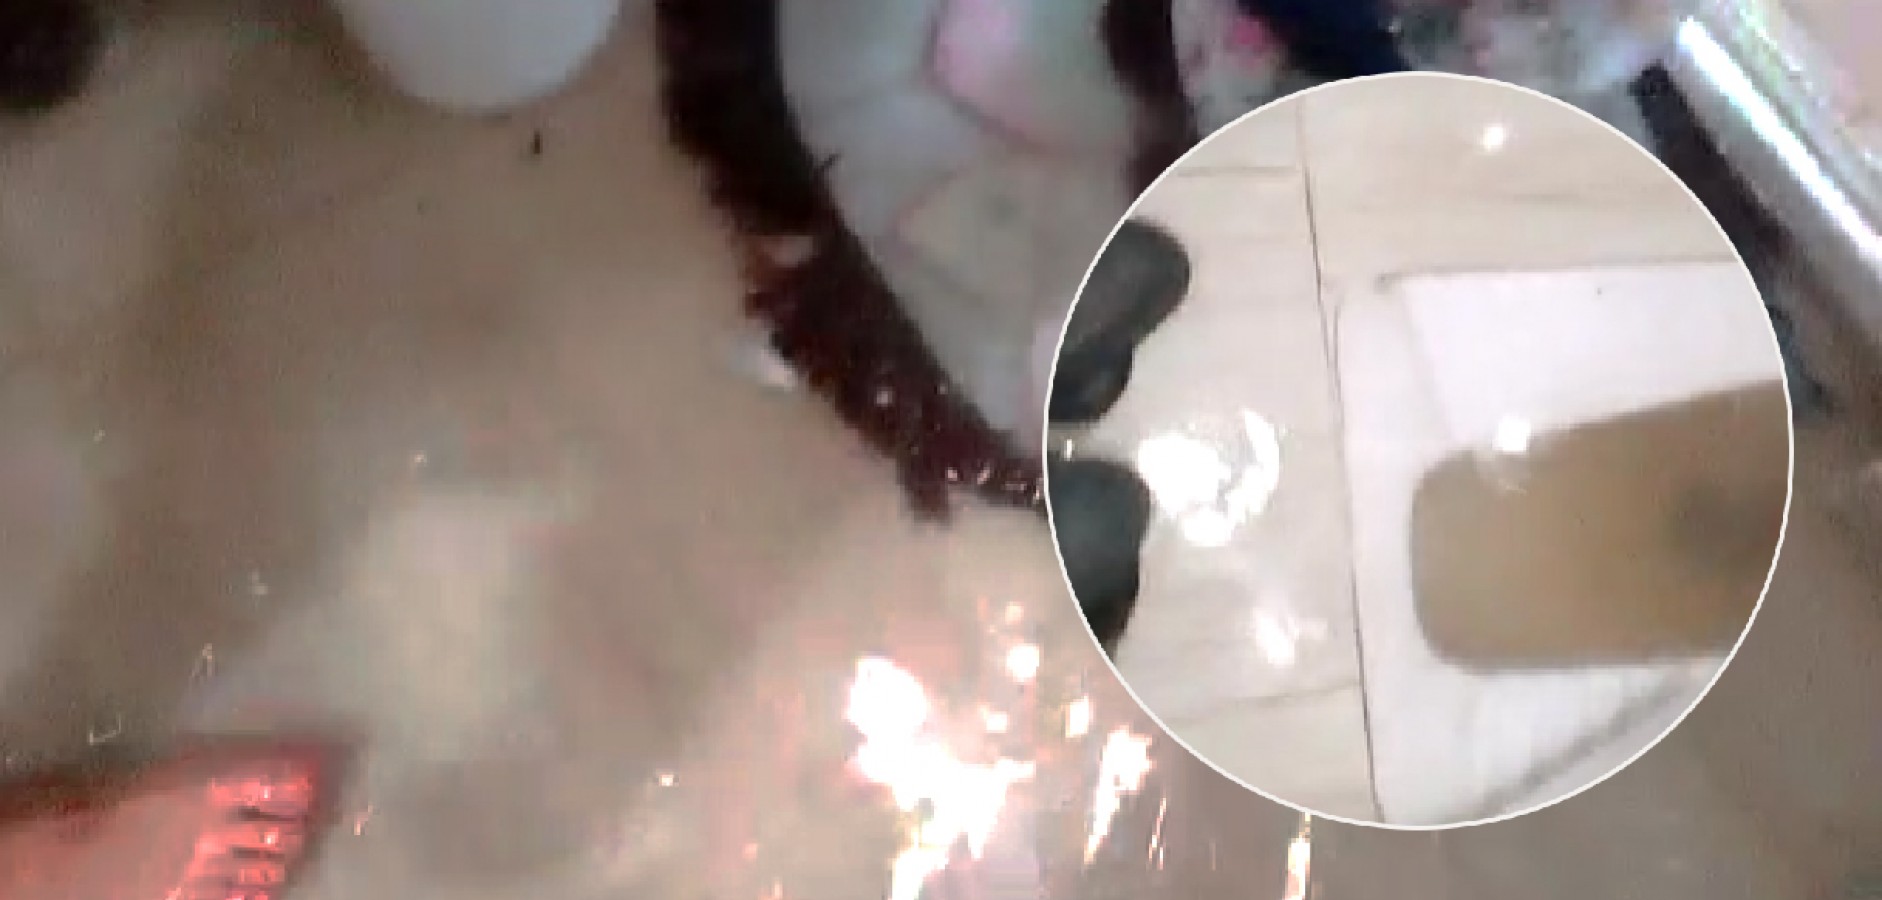 Urfa'da evini su basan kadın isyan etti: Arıyoruz, suratımıza kapatıyorlar!;